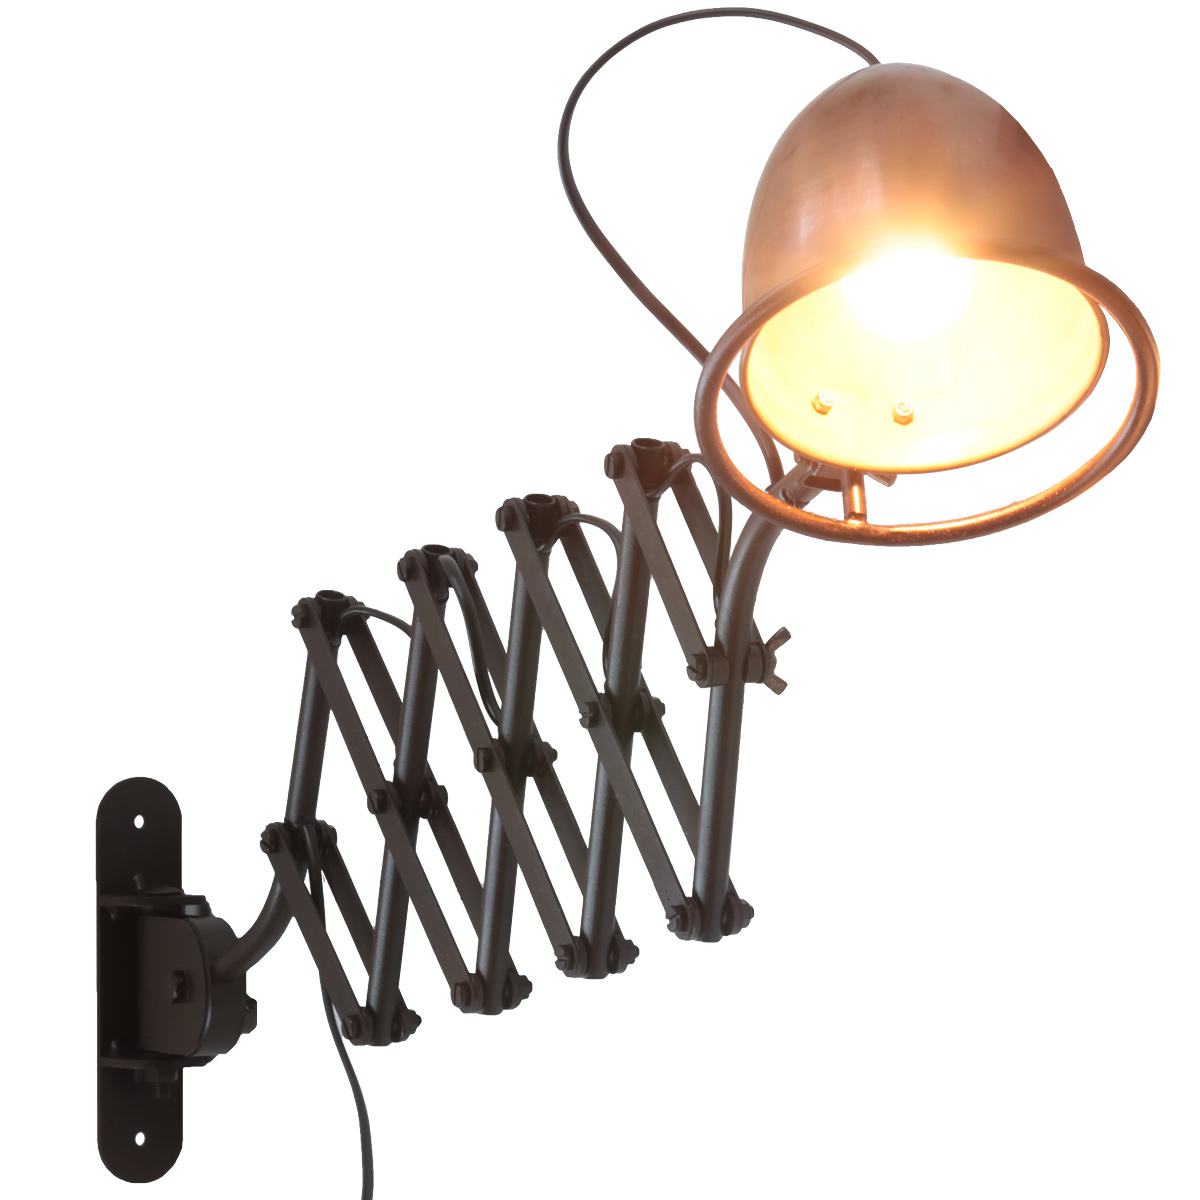 CUMINO Scherenleuchte mit Kupferschirm: Nostalgische Scherenleuchte mit Kupferschirm, innen vom Licht einer Glühbirne beleuchtet